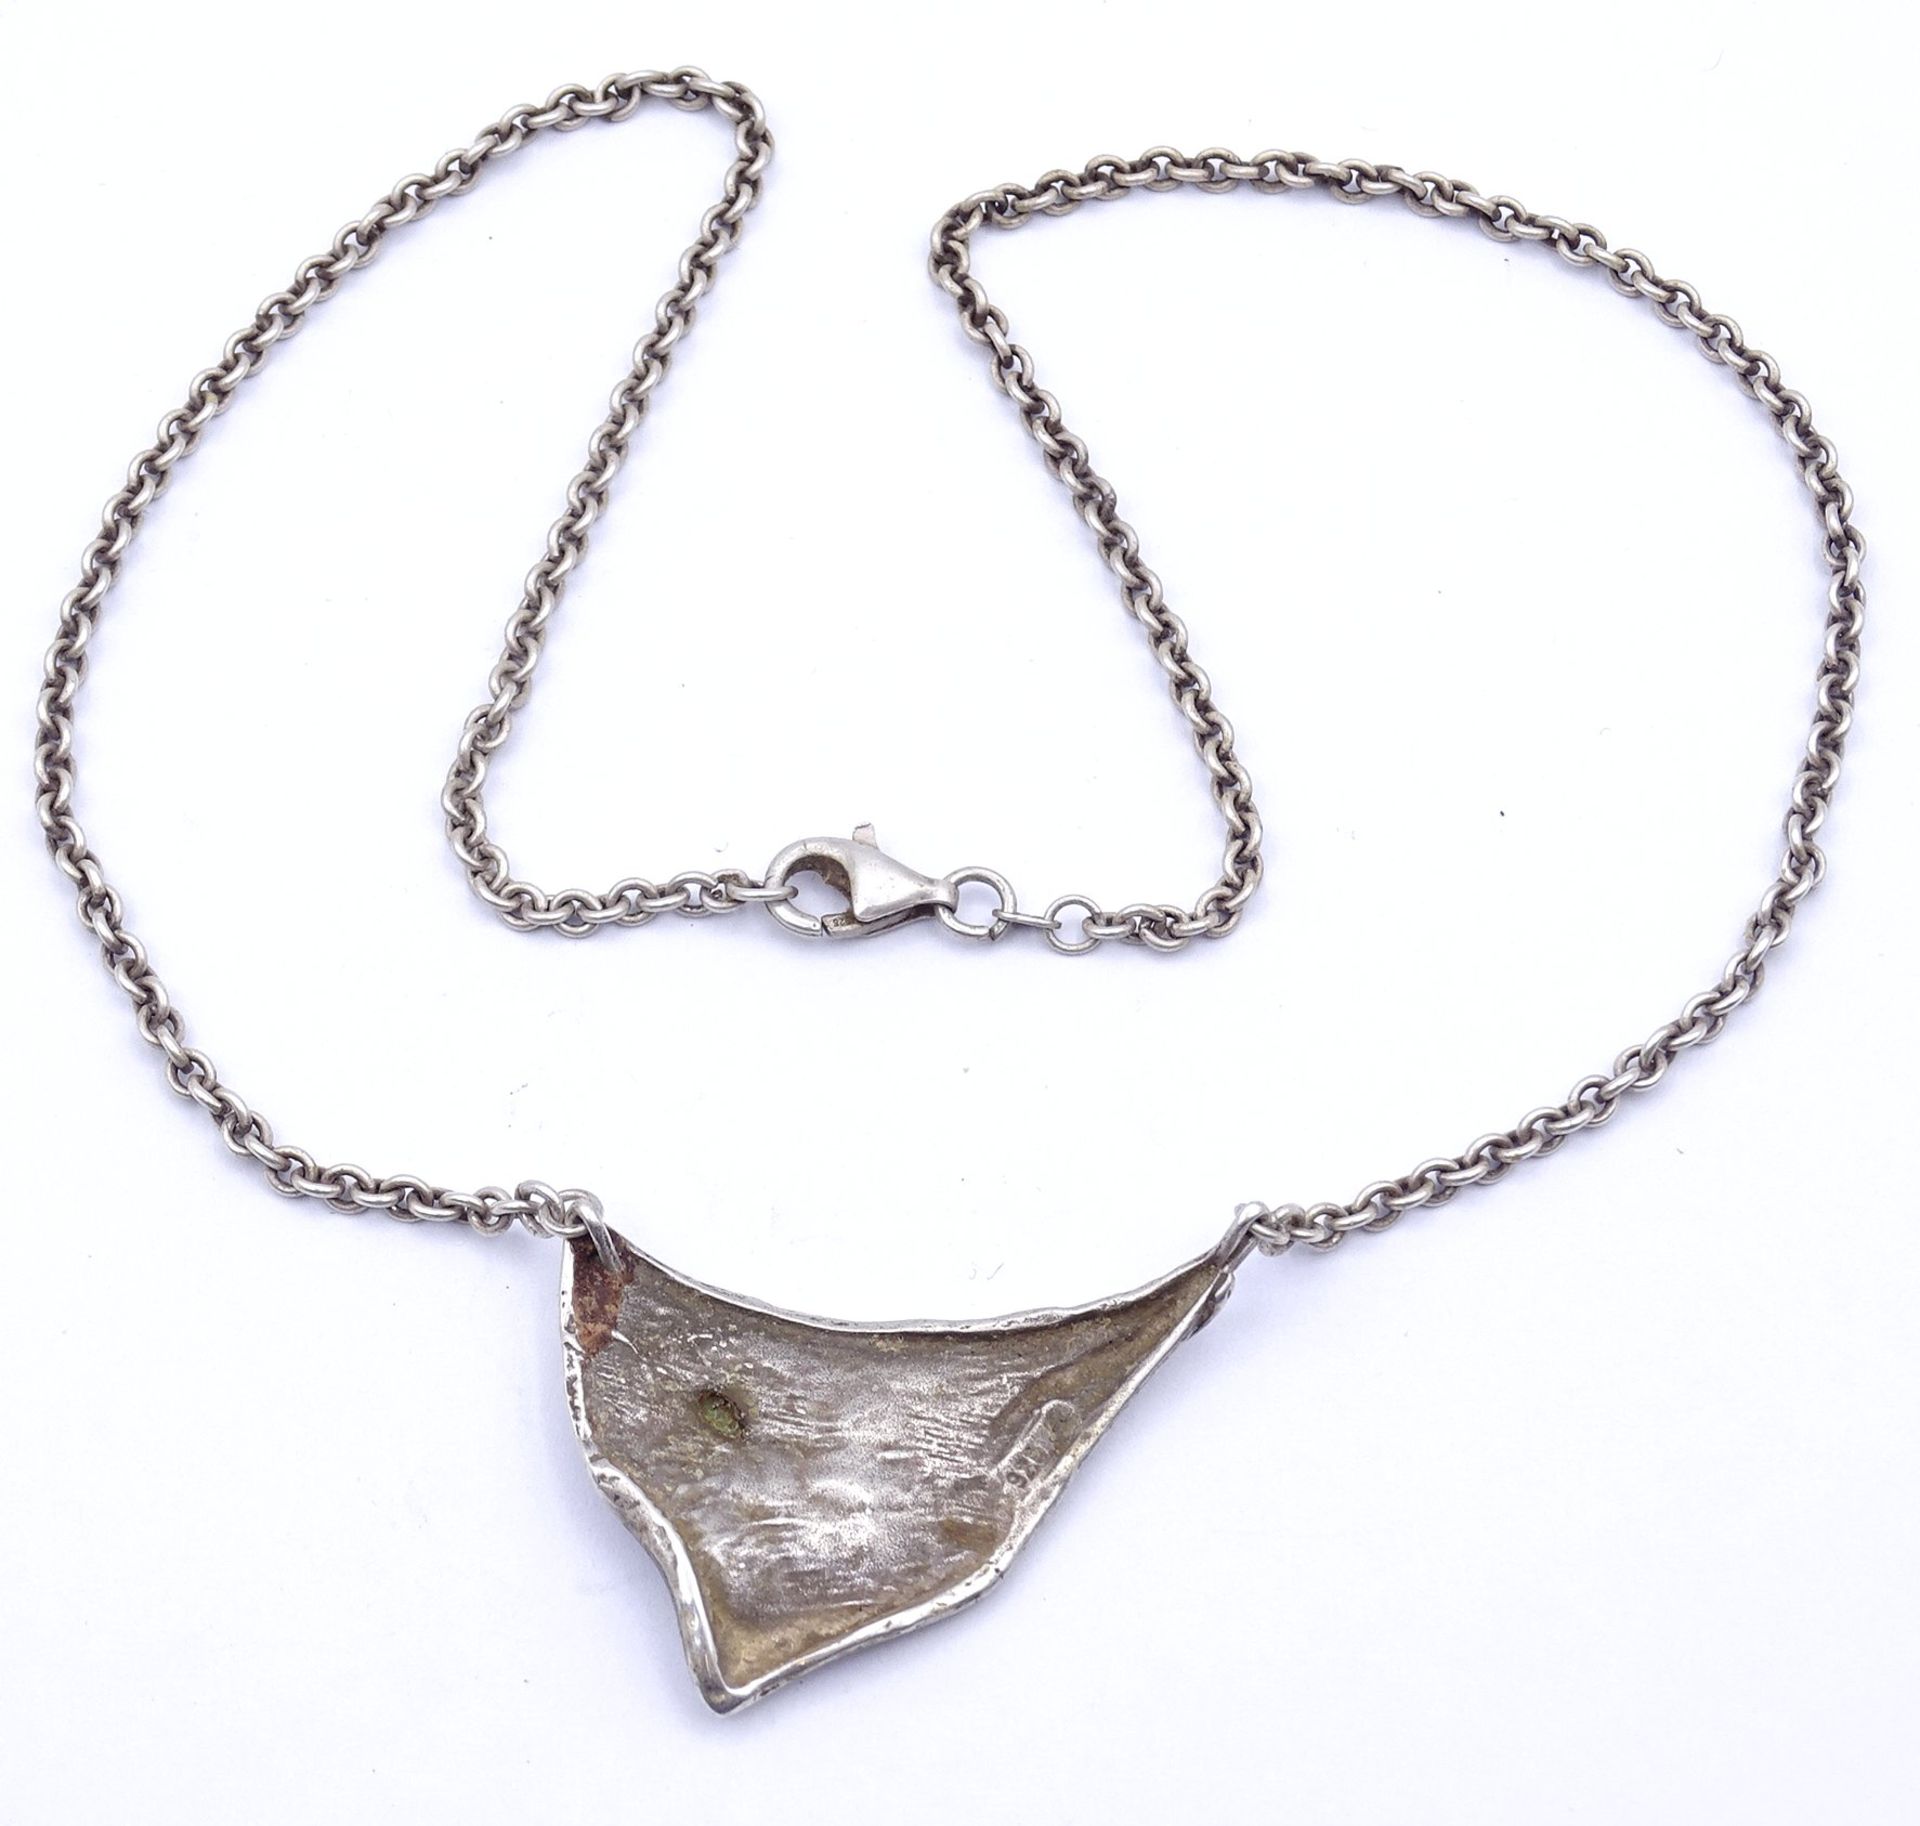 Halskette, Silber 0.925 mit Opal, L. 44cm, 13g. - Bild 3 aus 3